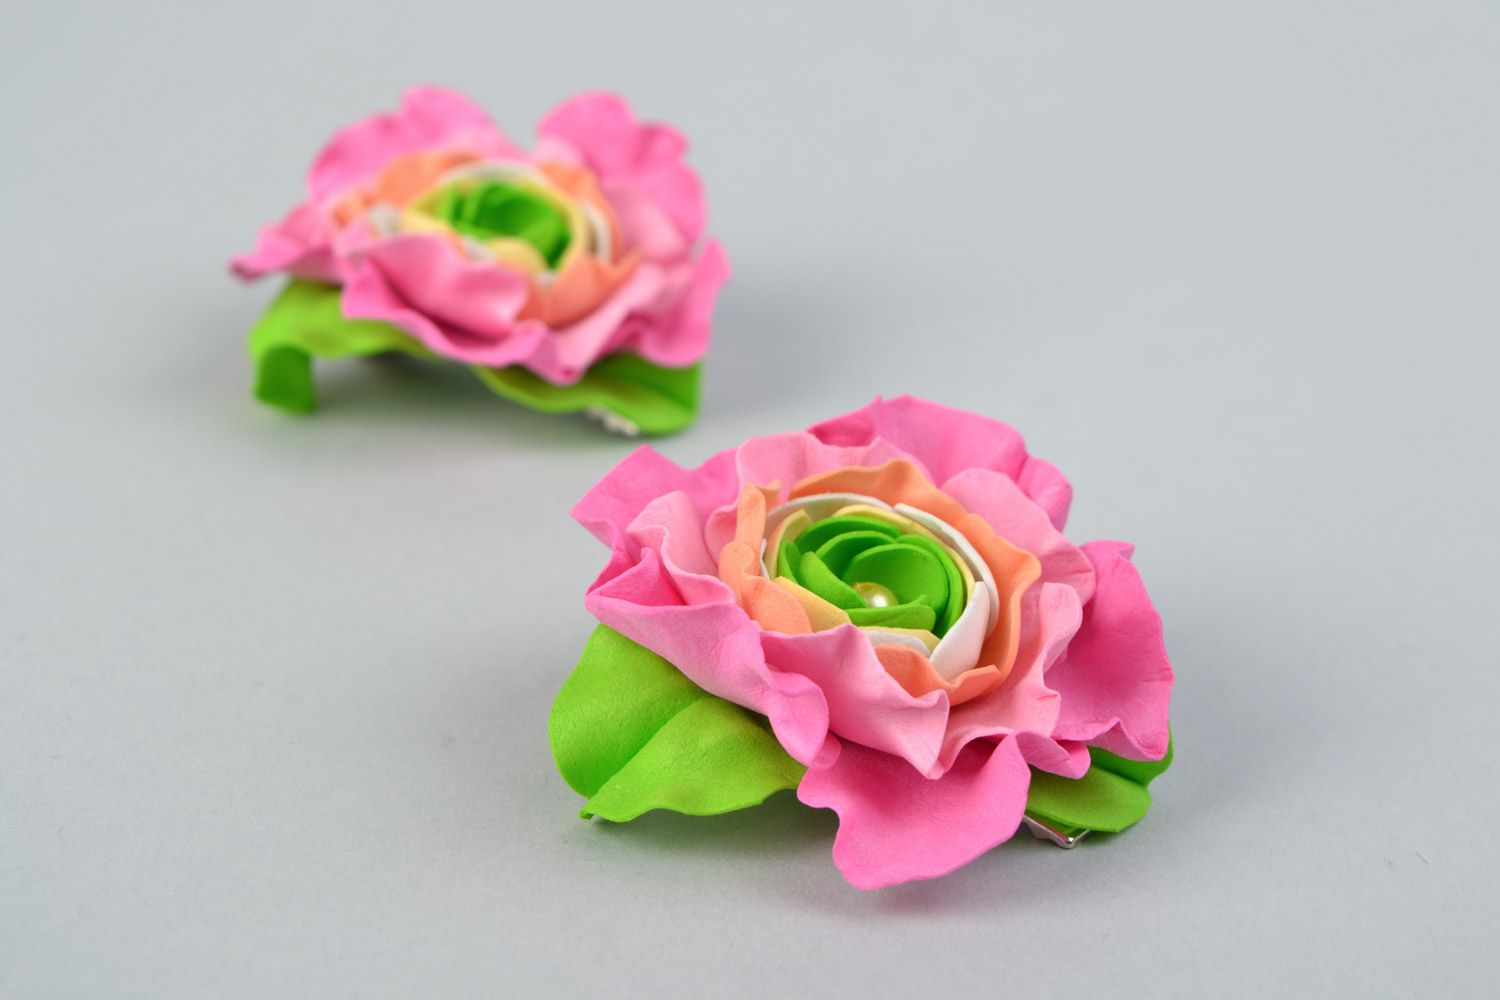 Заколки из фоамирана набор 2 штуки ручной работы цветы розовые с зеленым красивые фото 1